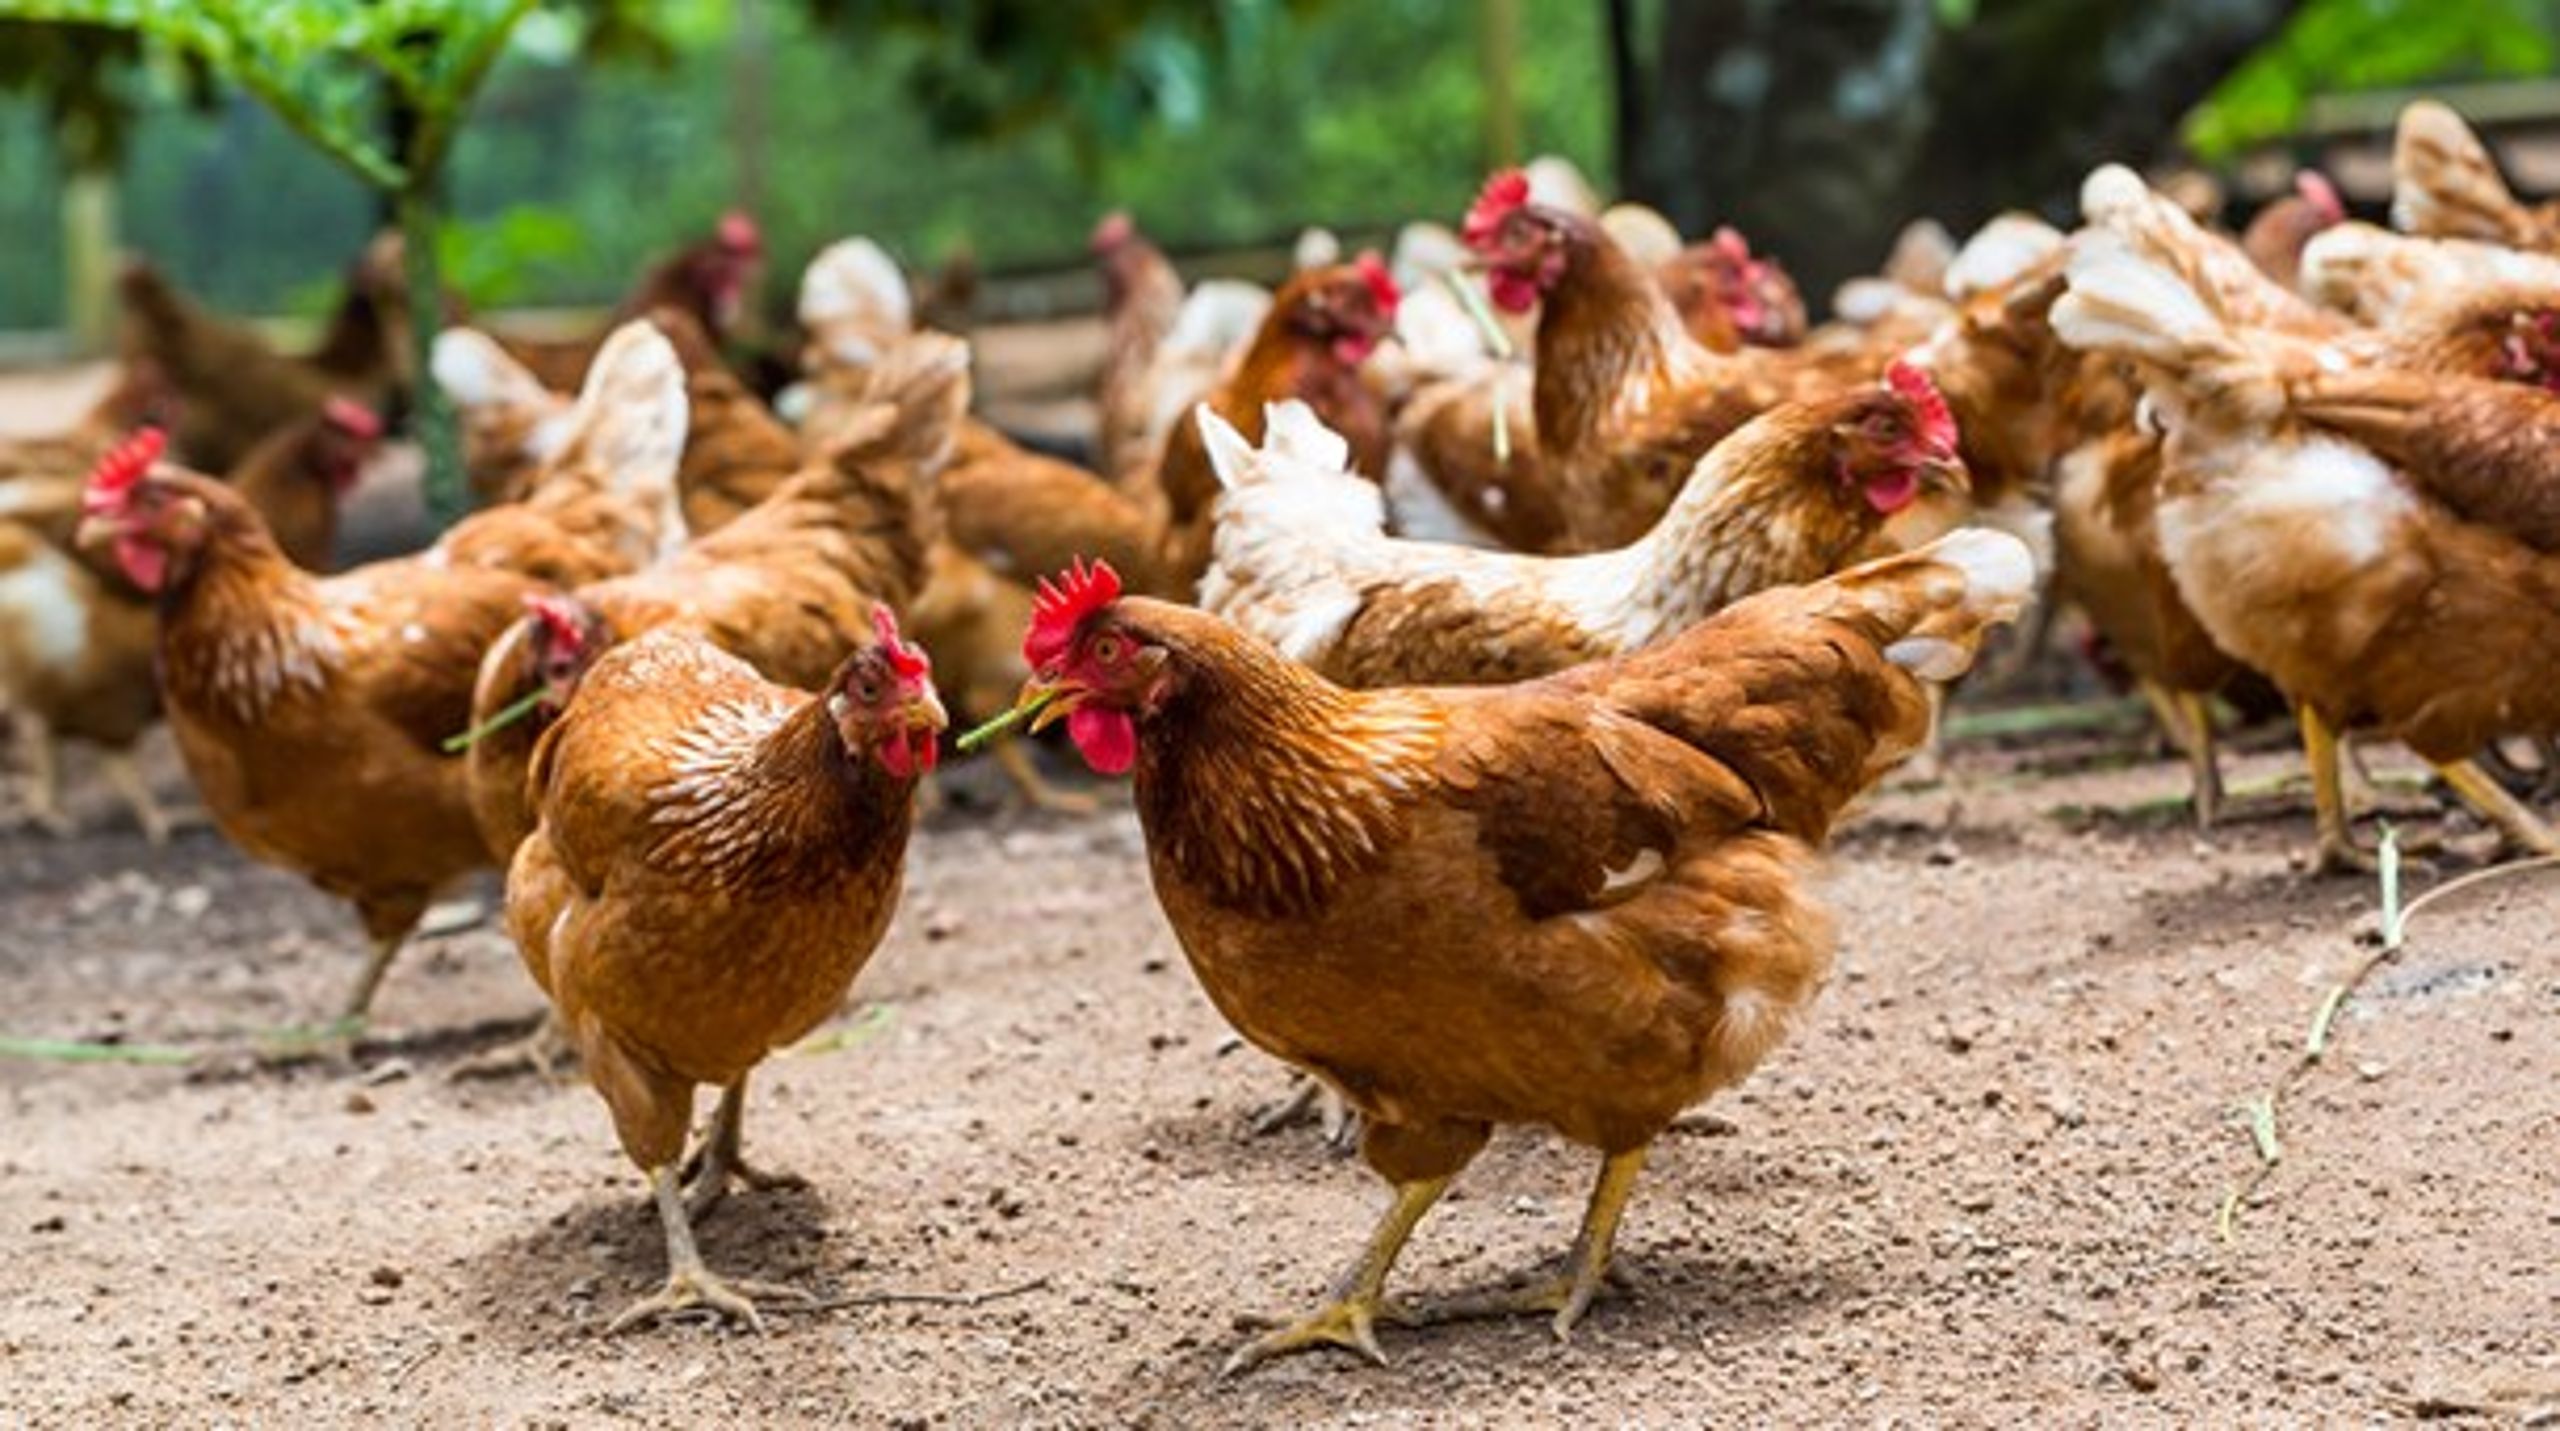 Danske økologiske landmænd&nbsp;anvender modsat andre EU-lande kun økologiske kyllinger til ægproduktion.&nbsp;